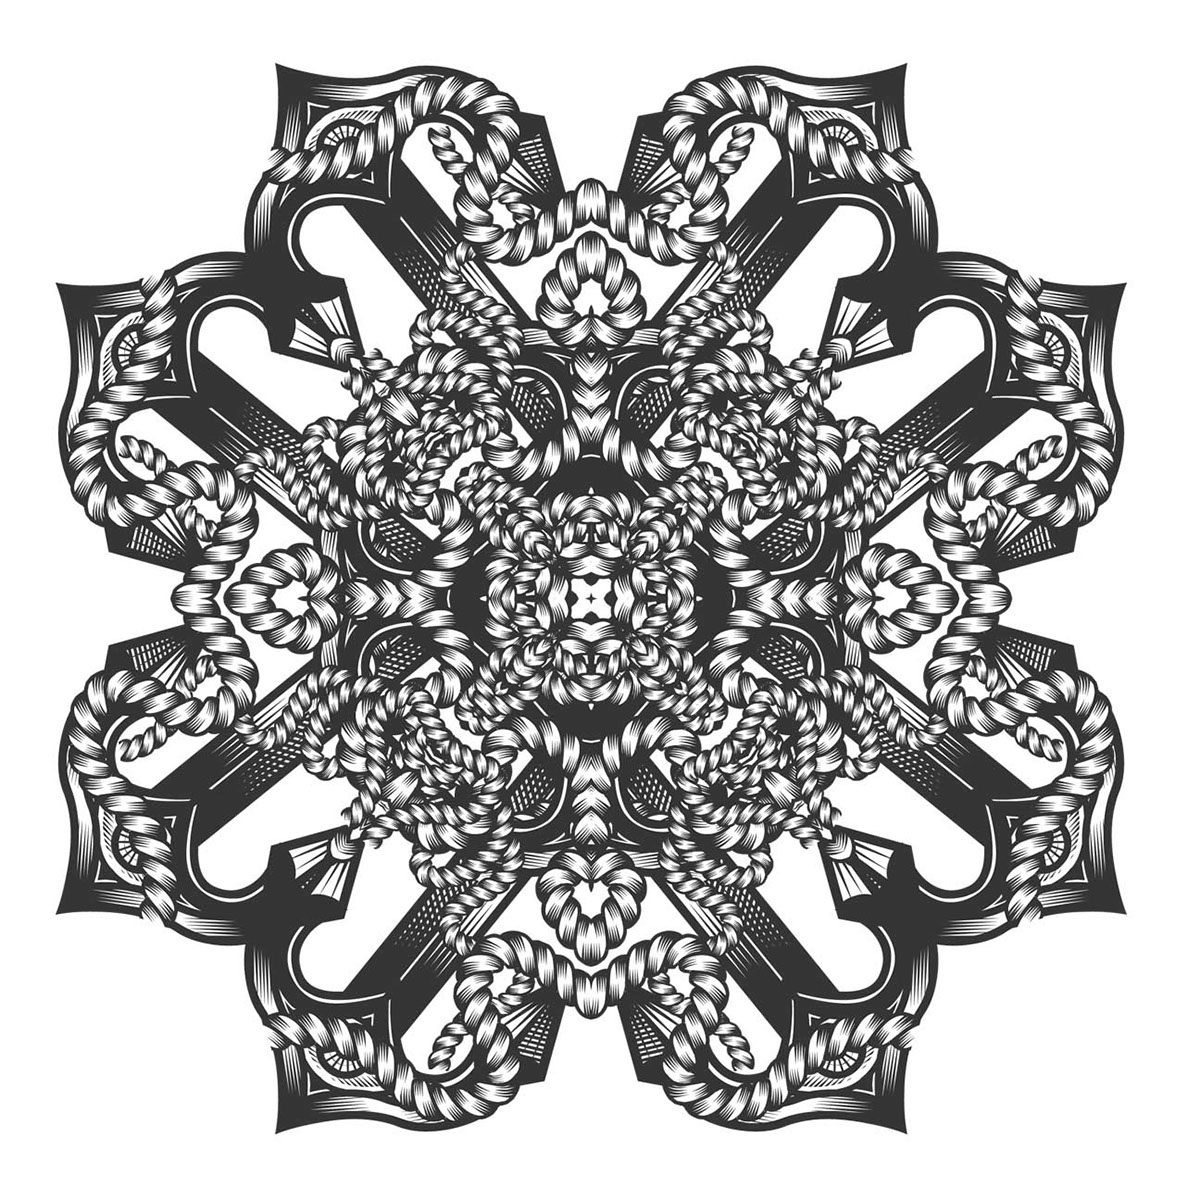 praystation  Joshua Davis  hydro74  pattern  ornate